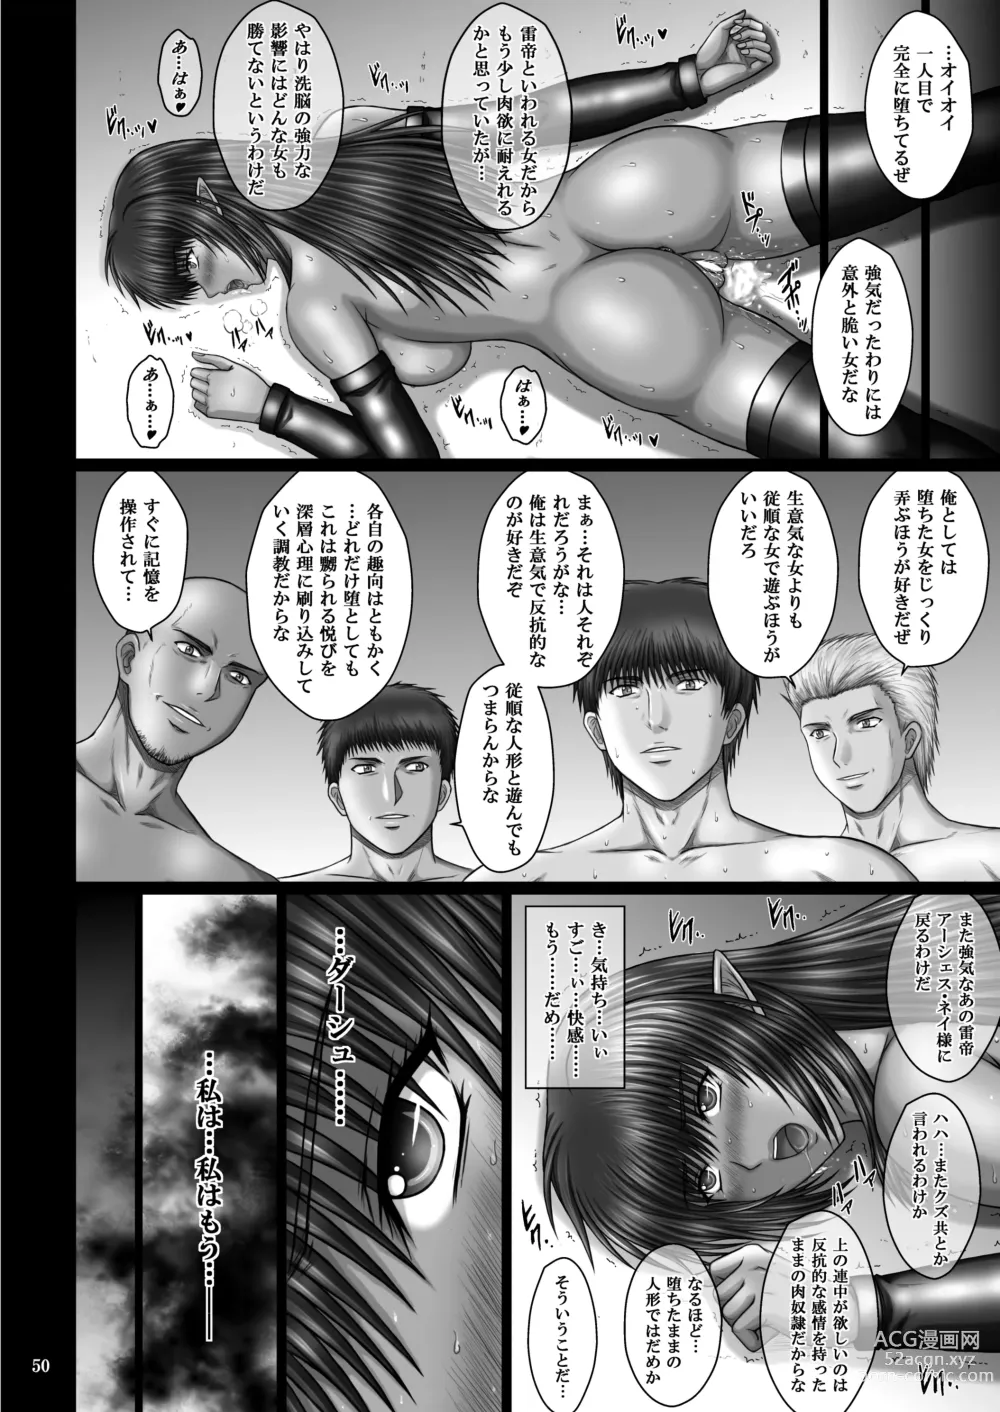 Page 50 of doujinshi Kuro no Ori